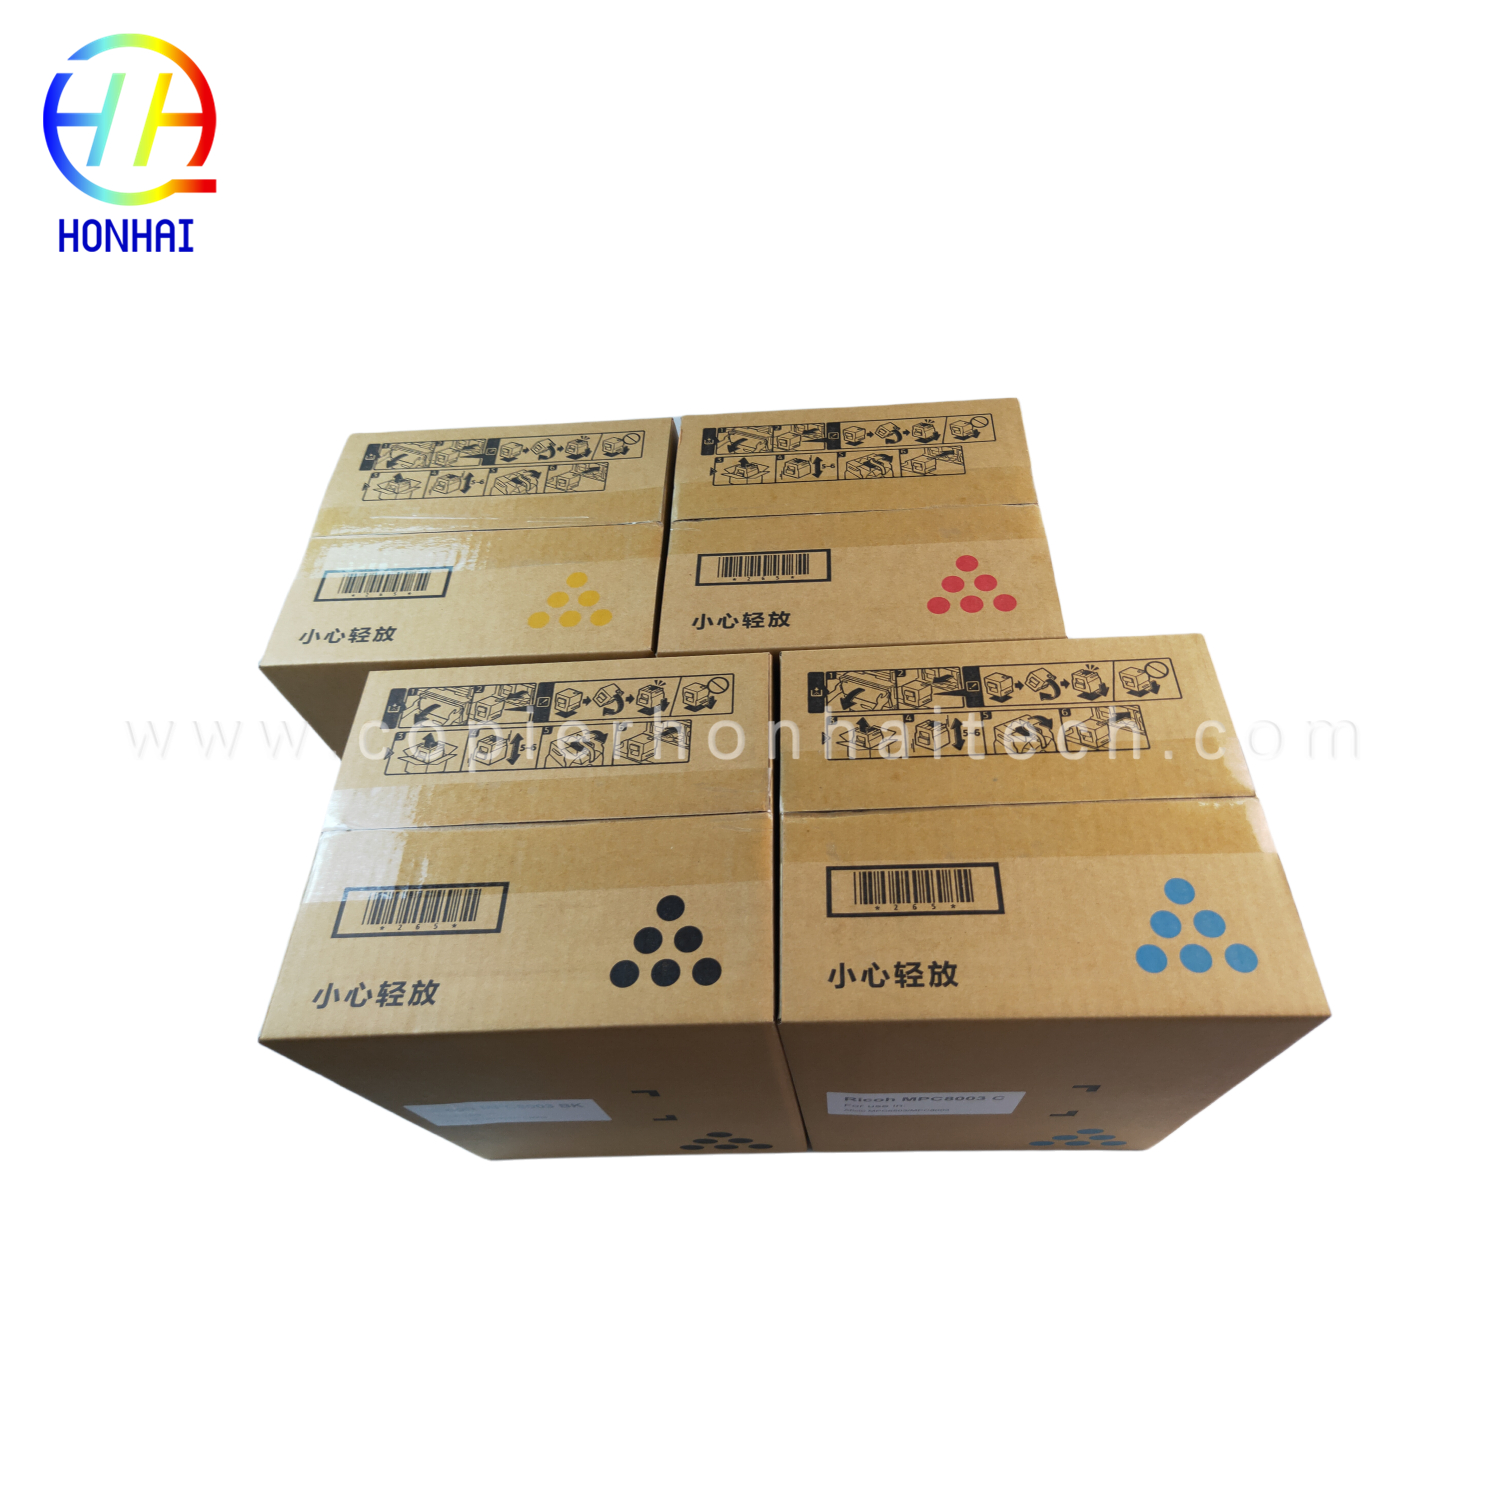 https://www.copierhonhaitech.com/toner-cartridge-japan-powder-for-ricoh-ref-842346-mp9002-mp6002-mp6002sp-mp6503-mp7502-mp7502sp-mp7503-mp9002sp-mp-9003-product/